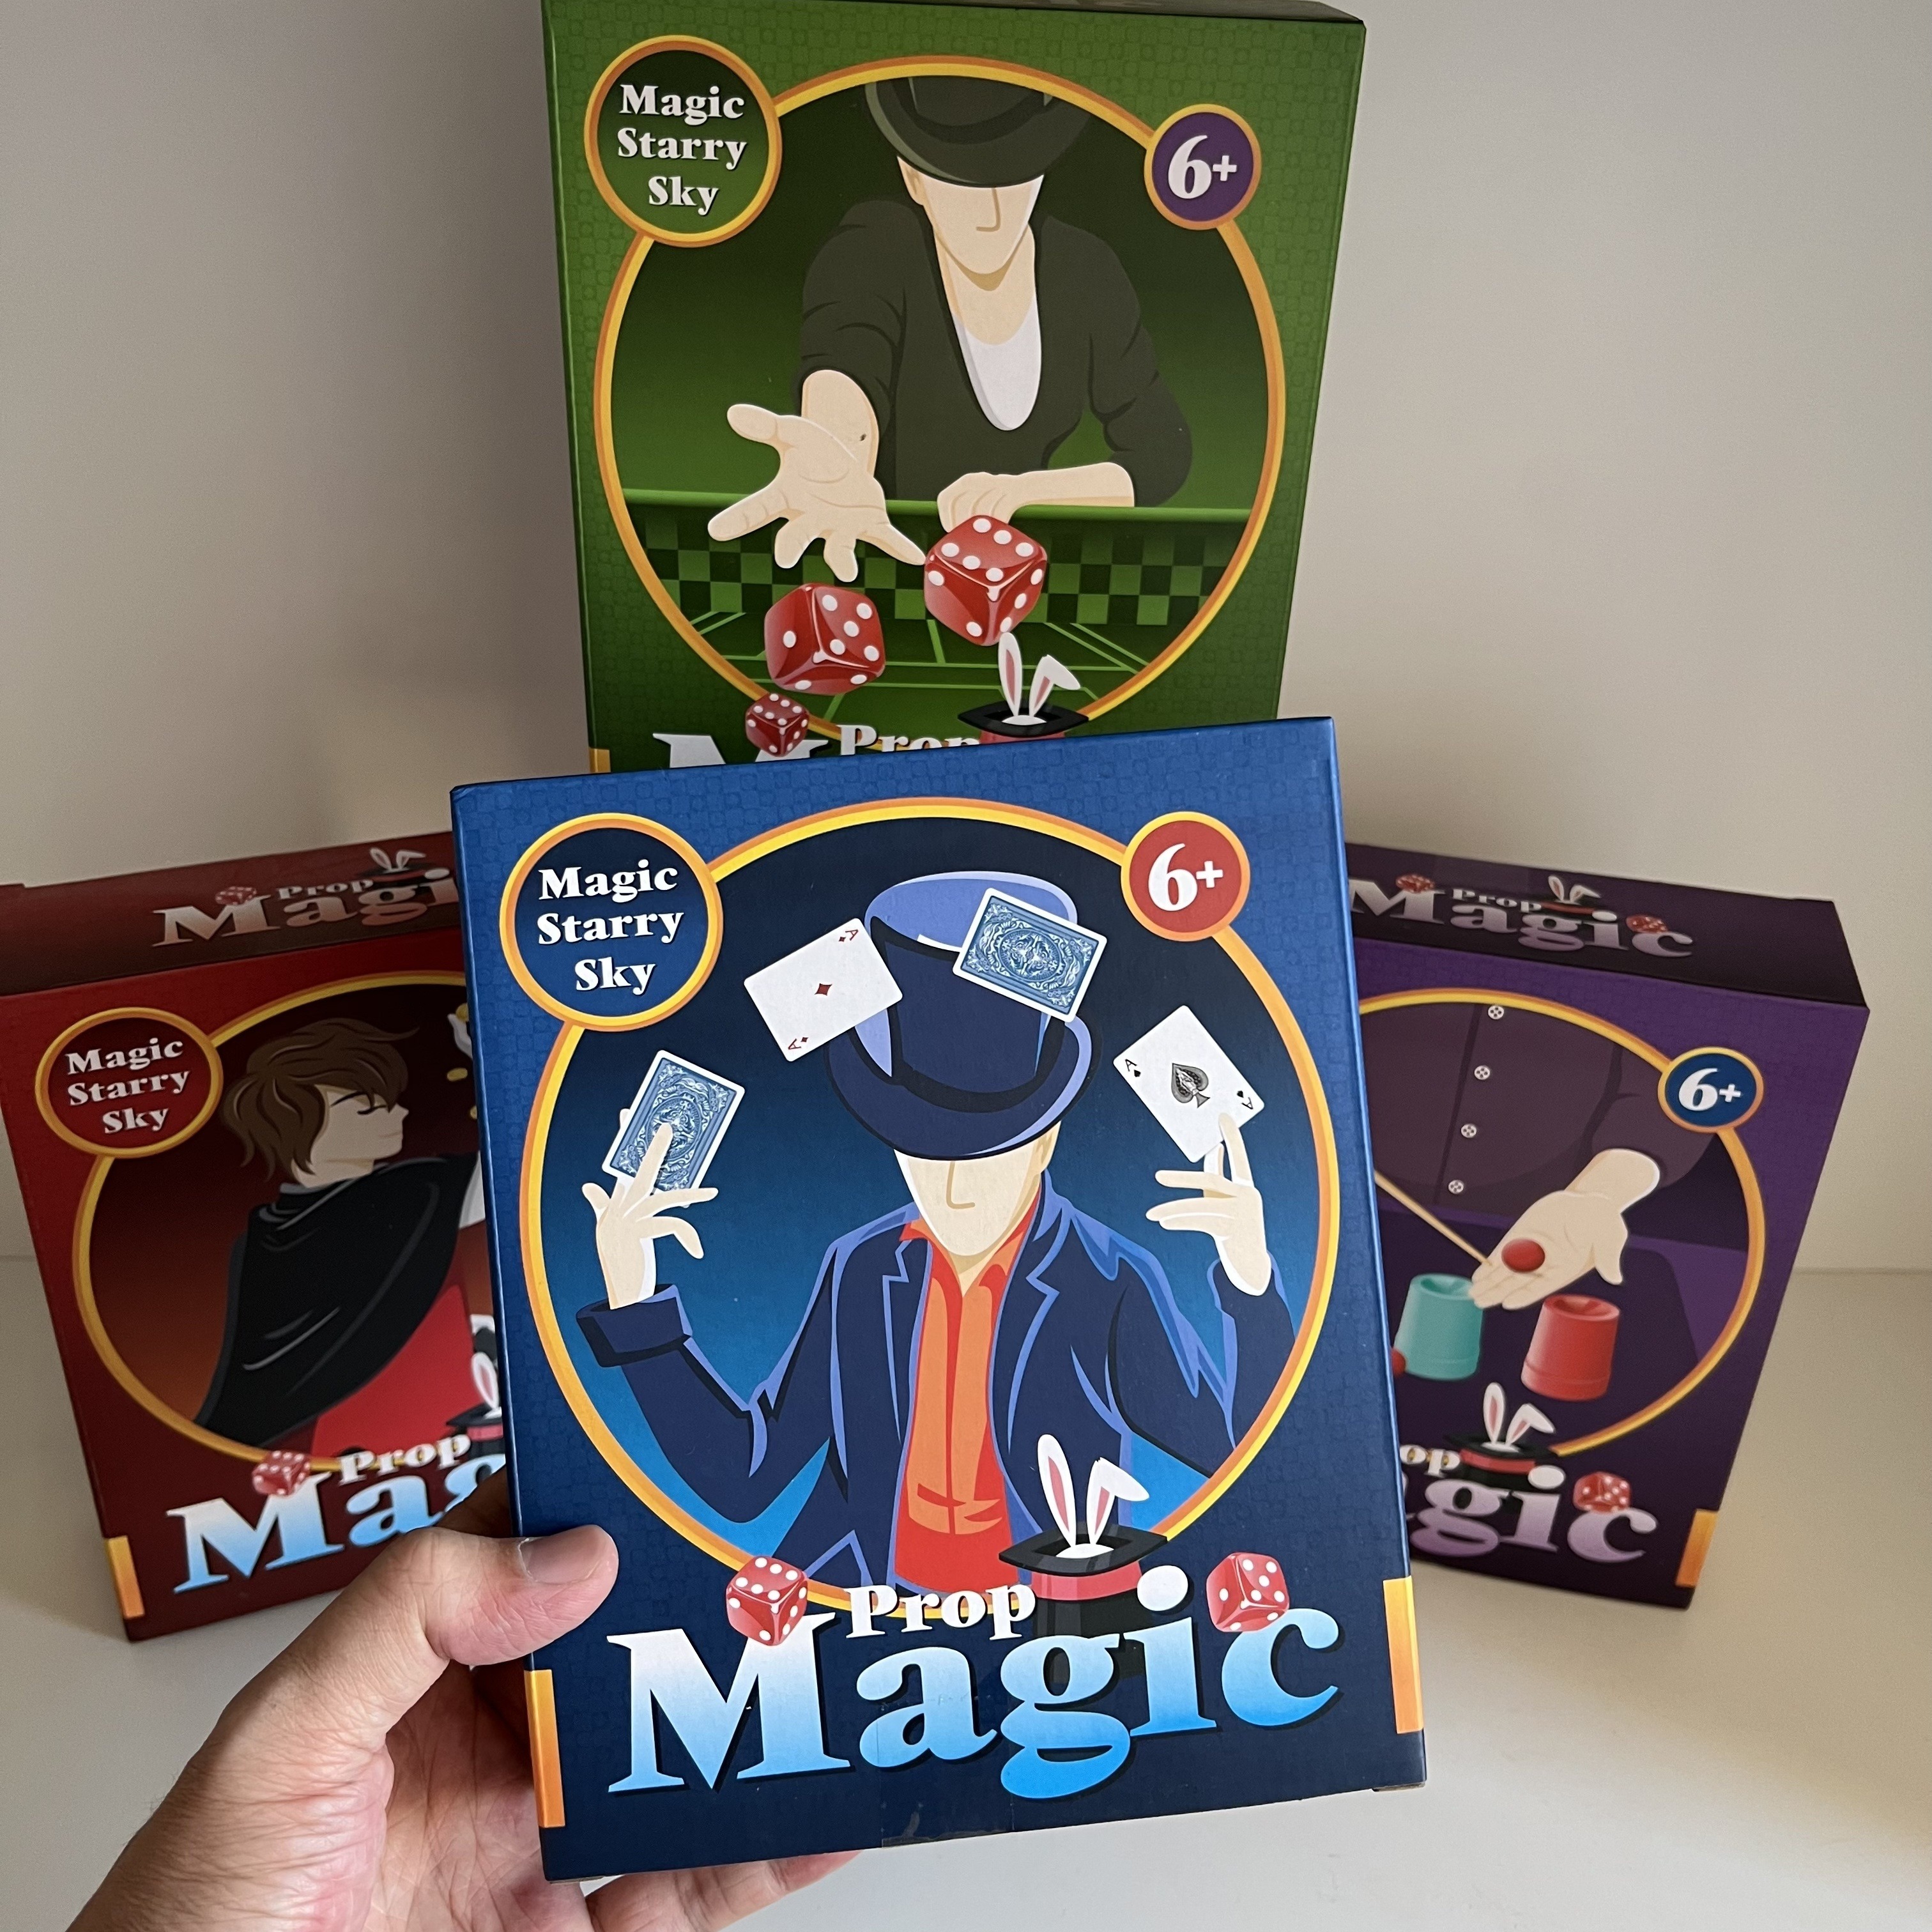 Jeux de magicien enfant : apprendre la magie